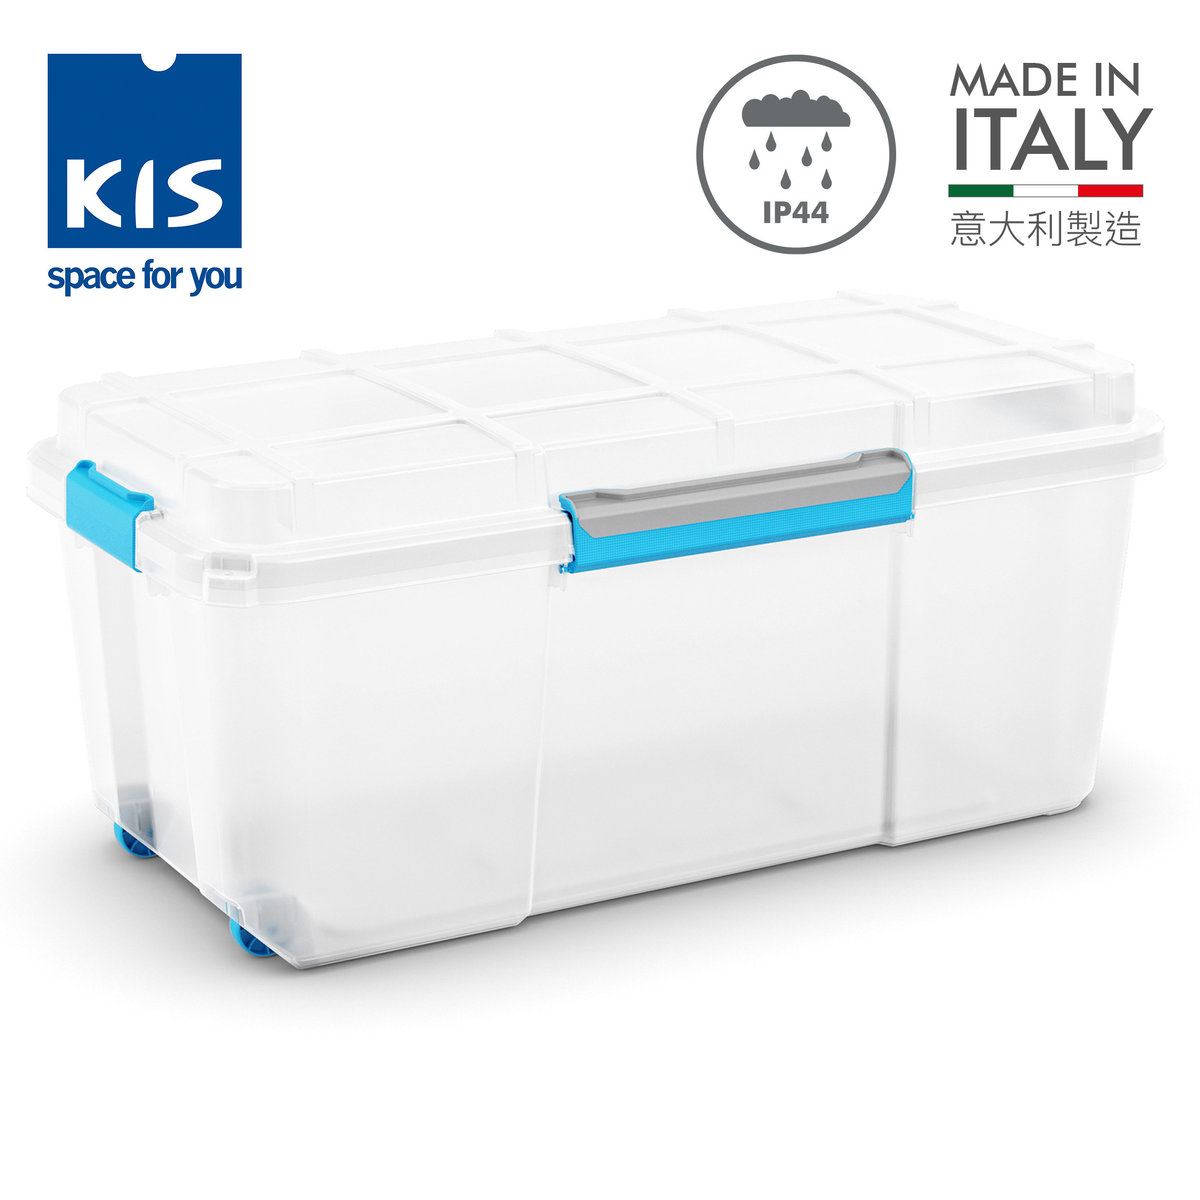 防水膠箱 大型 - 透明 - 意大利製造 - 防水系數IP44